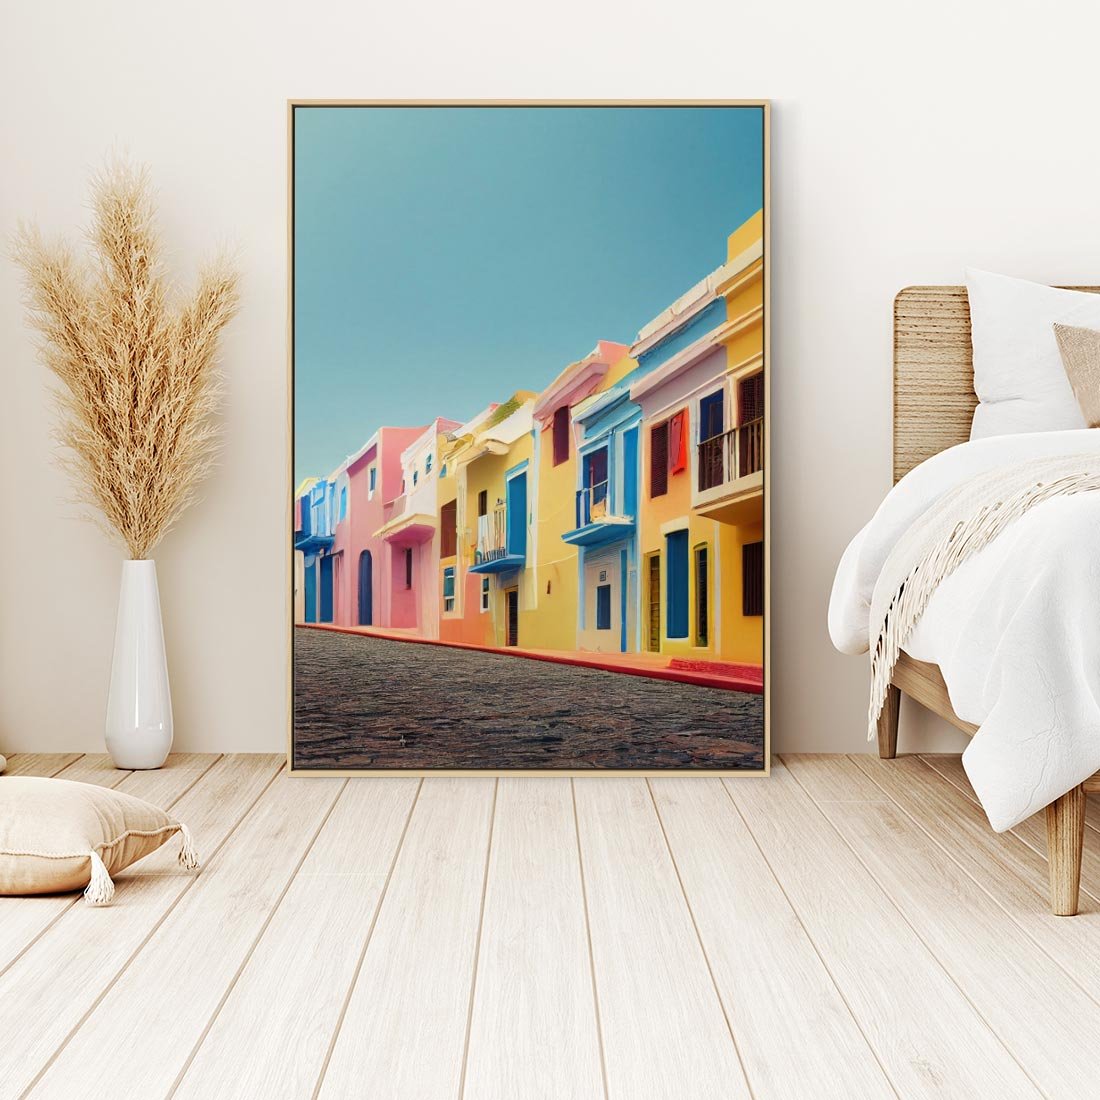 Obraz w ramie 50x70 - Ekspresja marzeń i tęsknot - pastelowe kolorowe budynki, wzdłuż ulicy - rama drewno